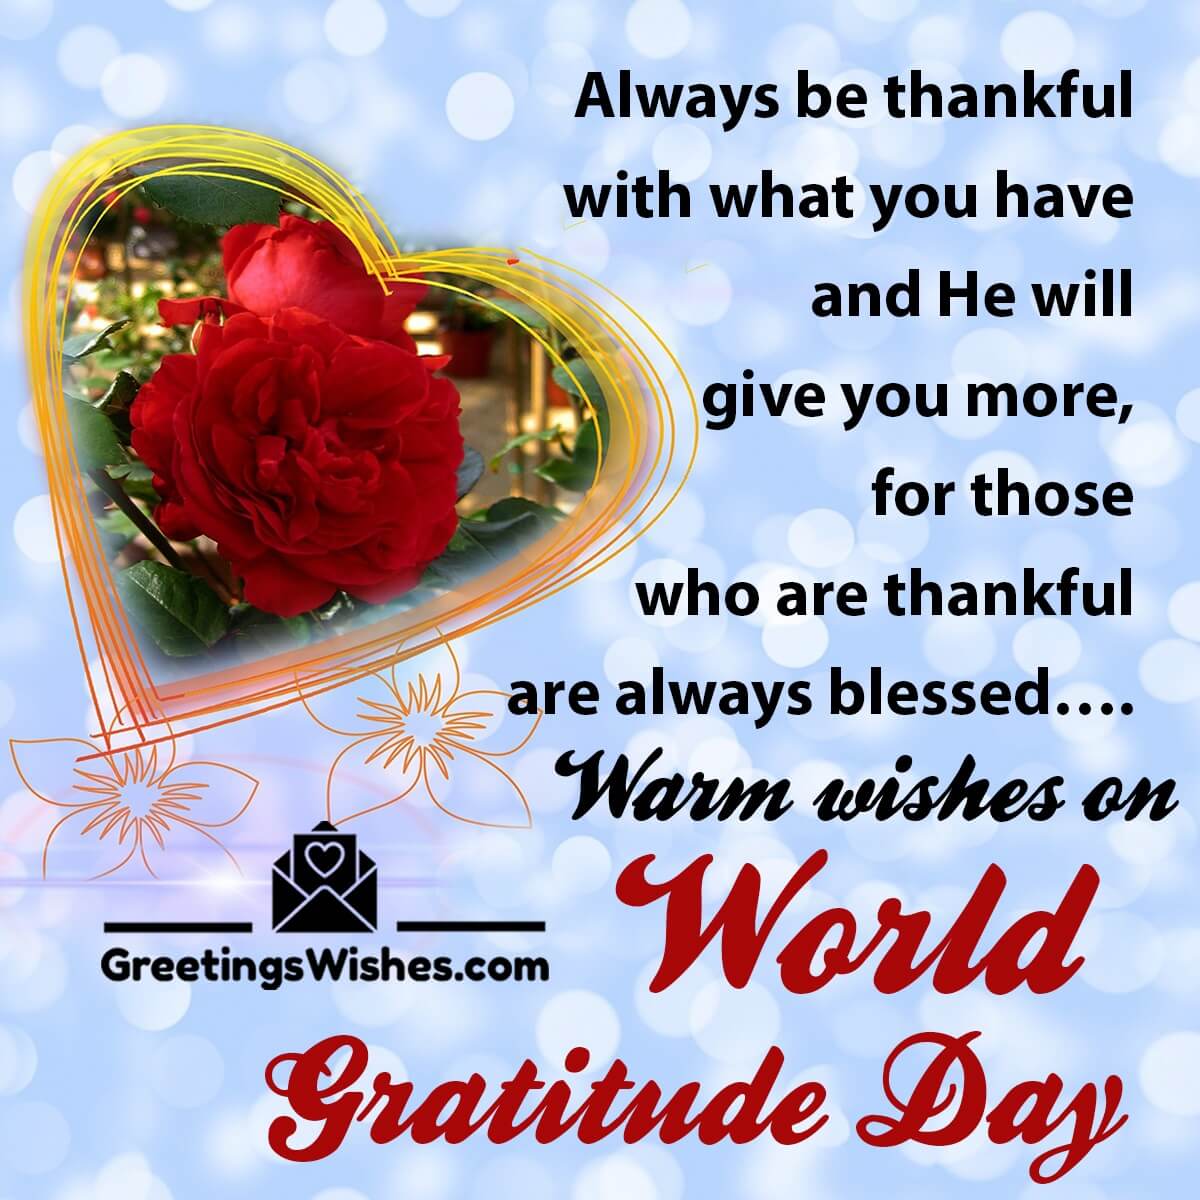 World Gratitude Day Wishes (21 September)